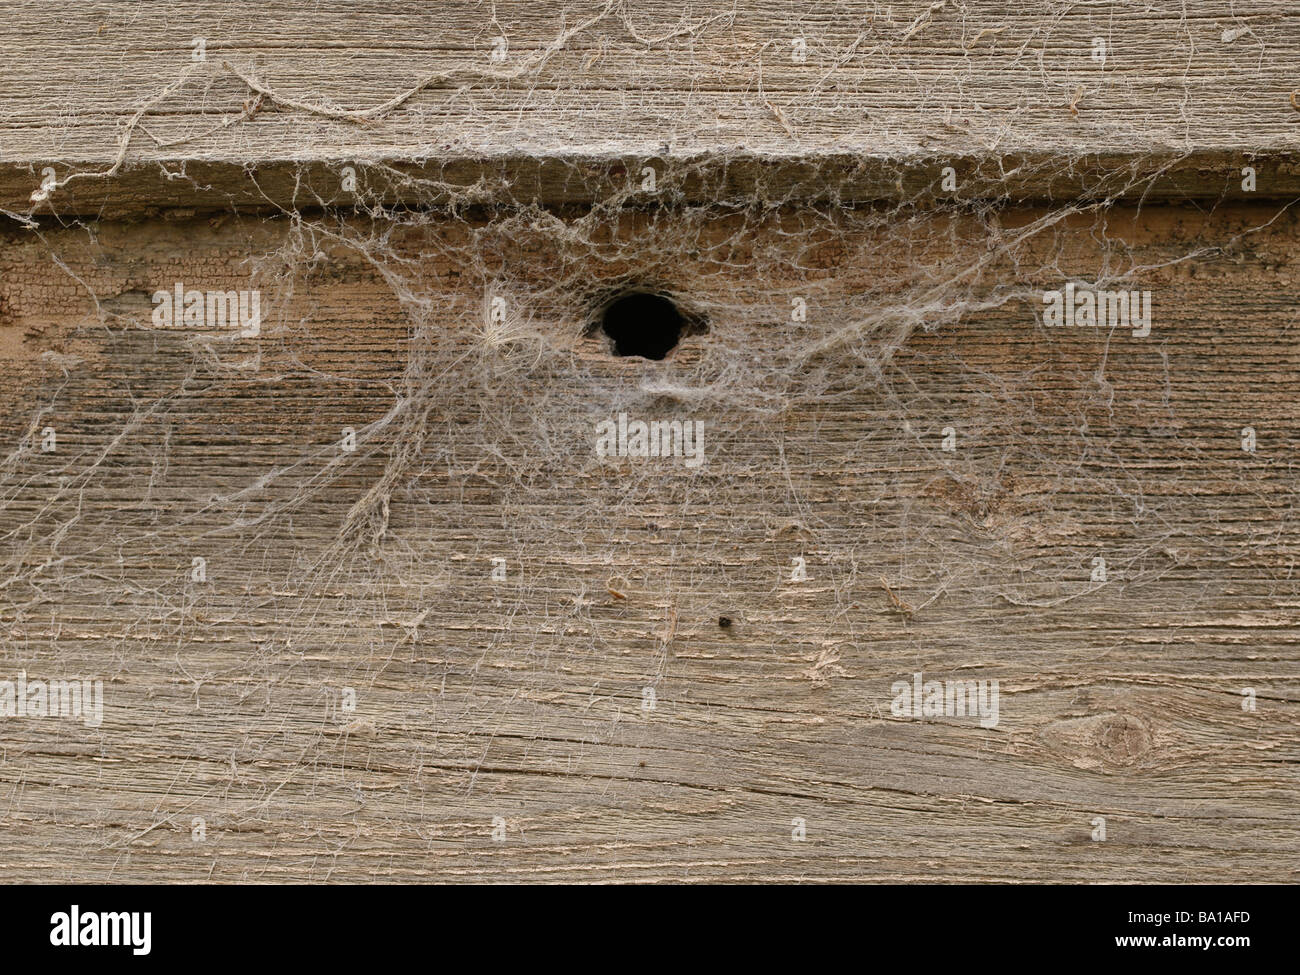 La texture de fond bois rough old grunge grungy sales retro vintage marquée d'une clôture de planches de bois patiné usé Banque D'Images